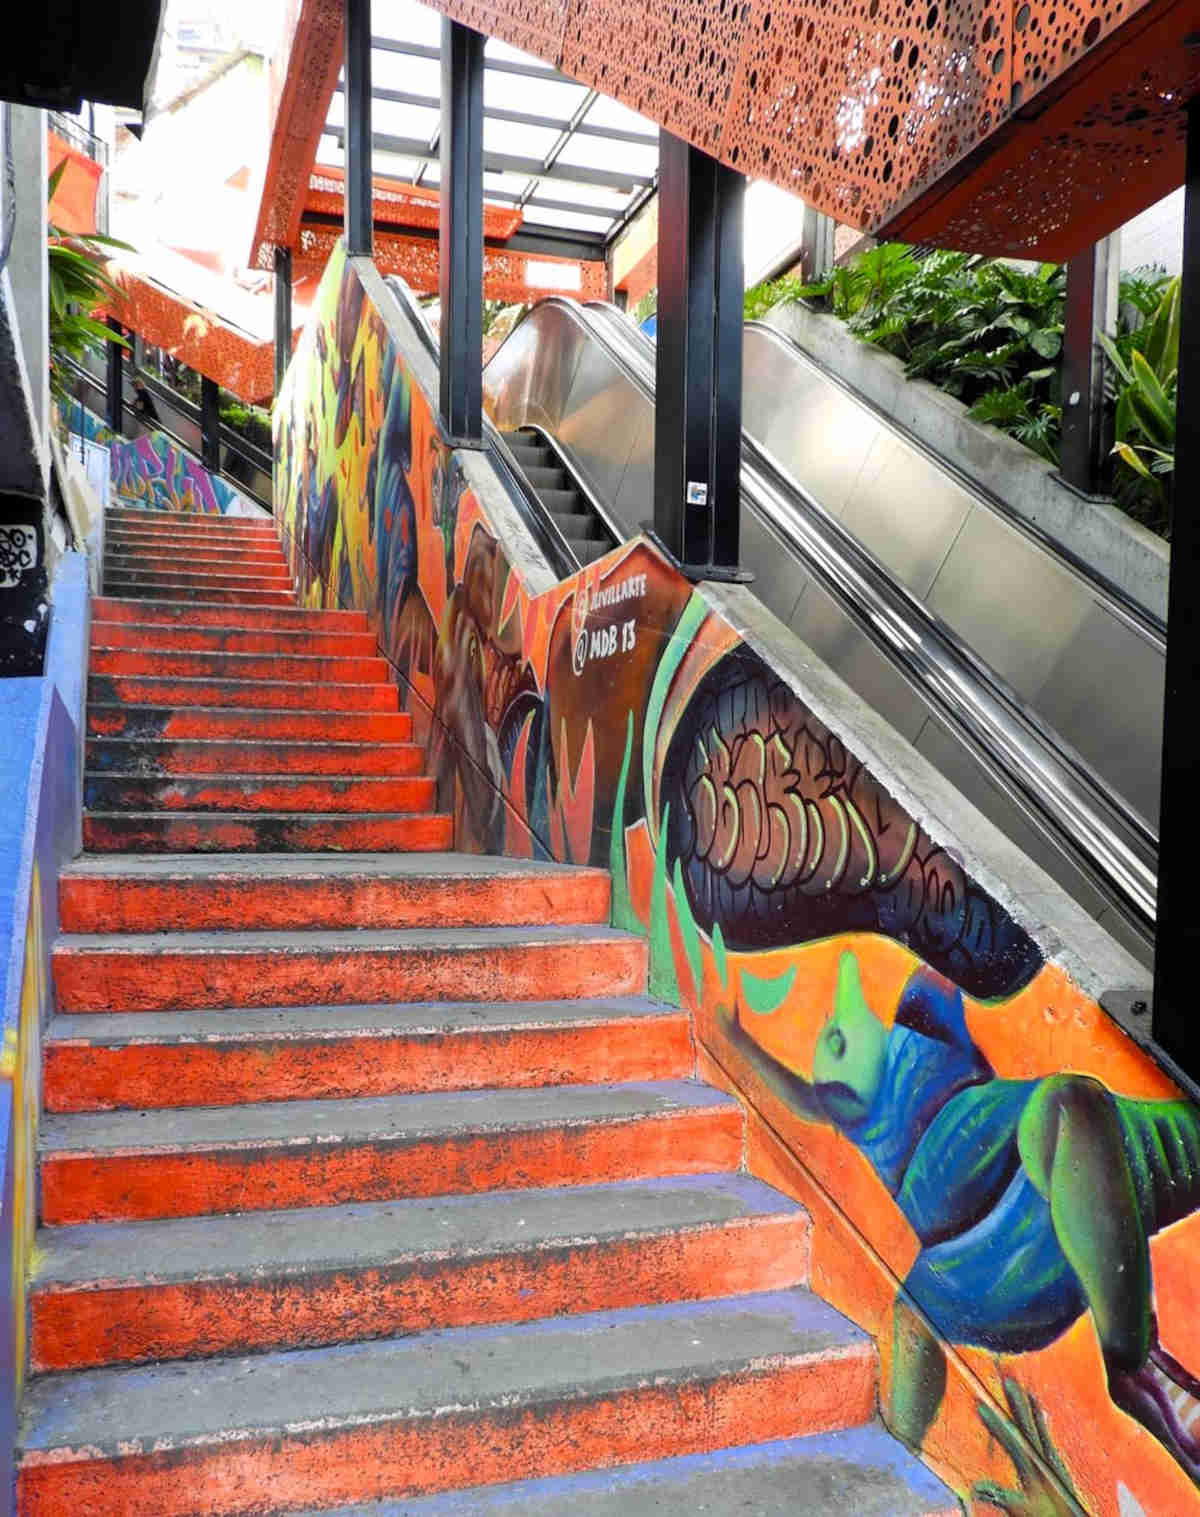  Le Escaleras a Medellin e i suoi graffiti